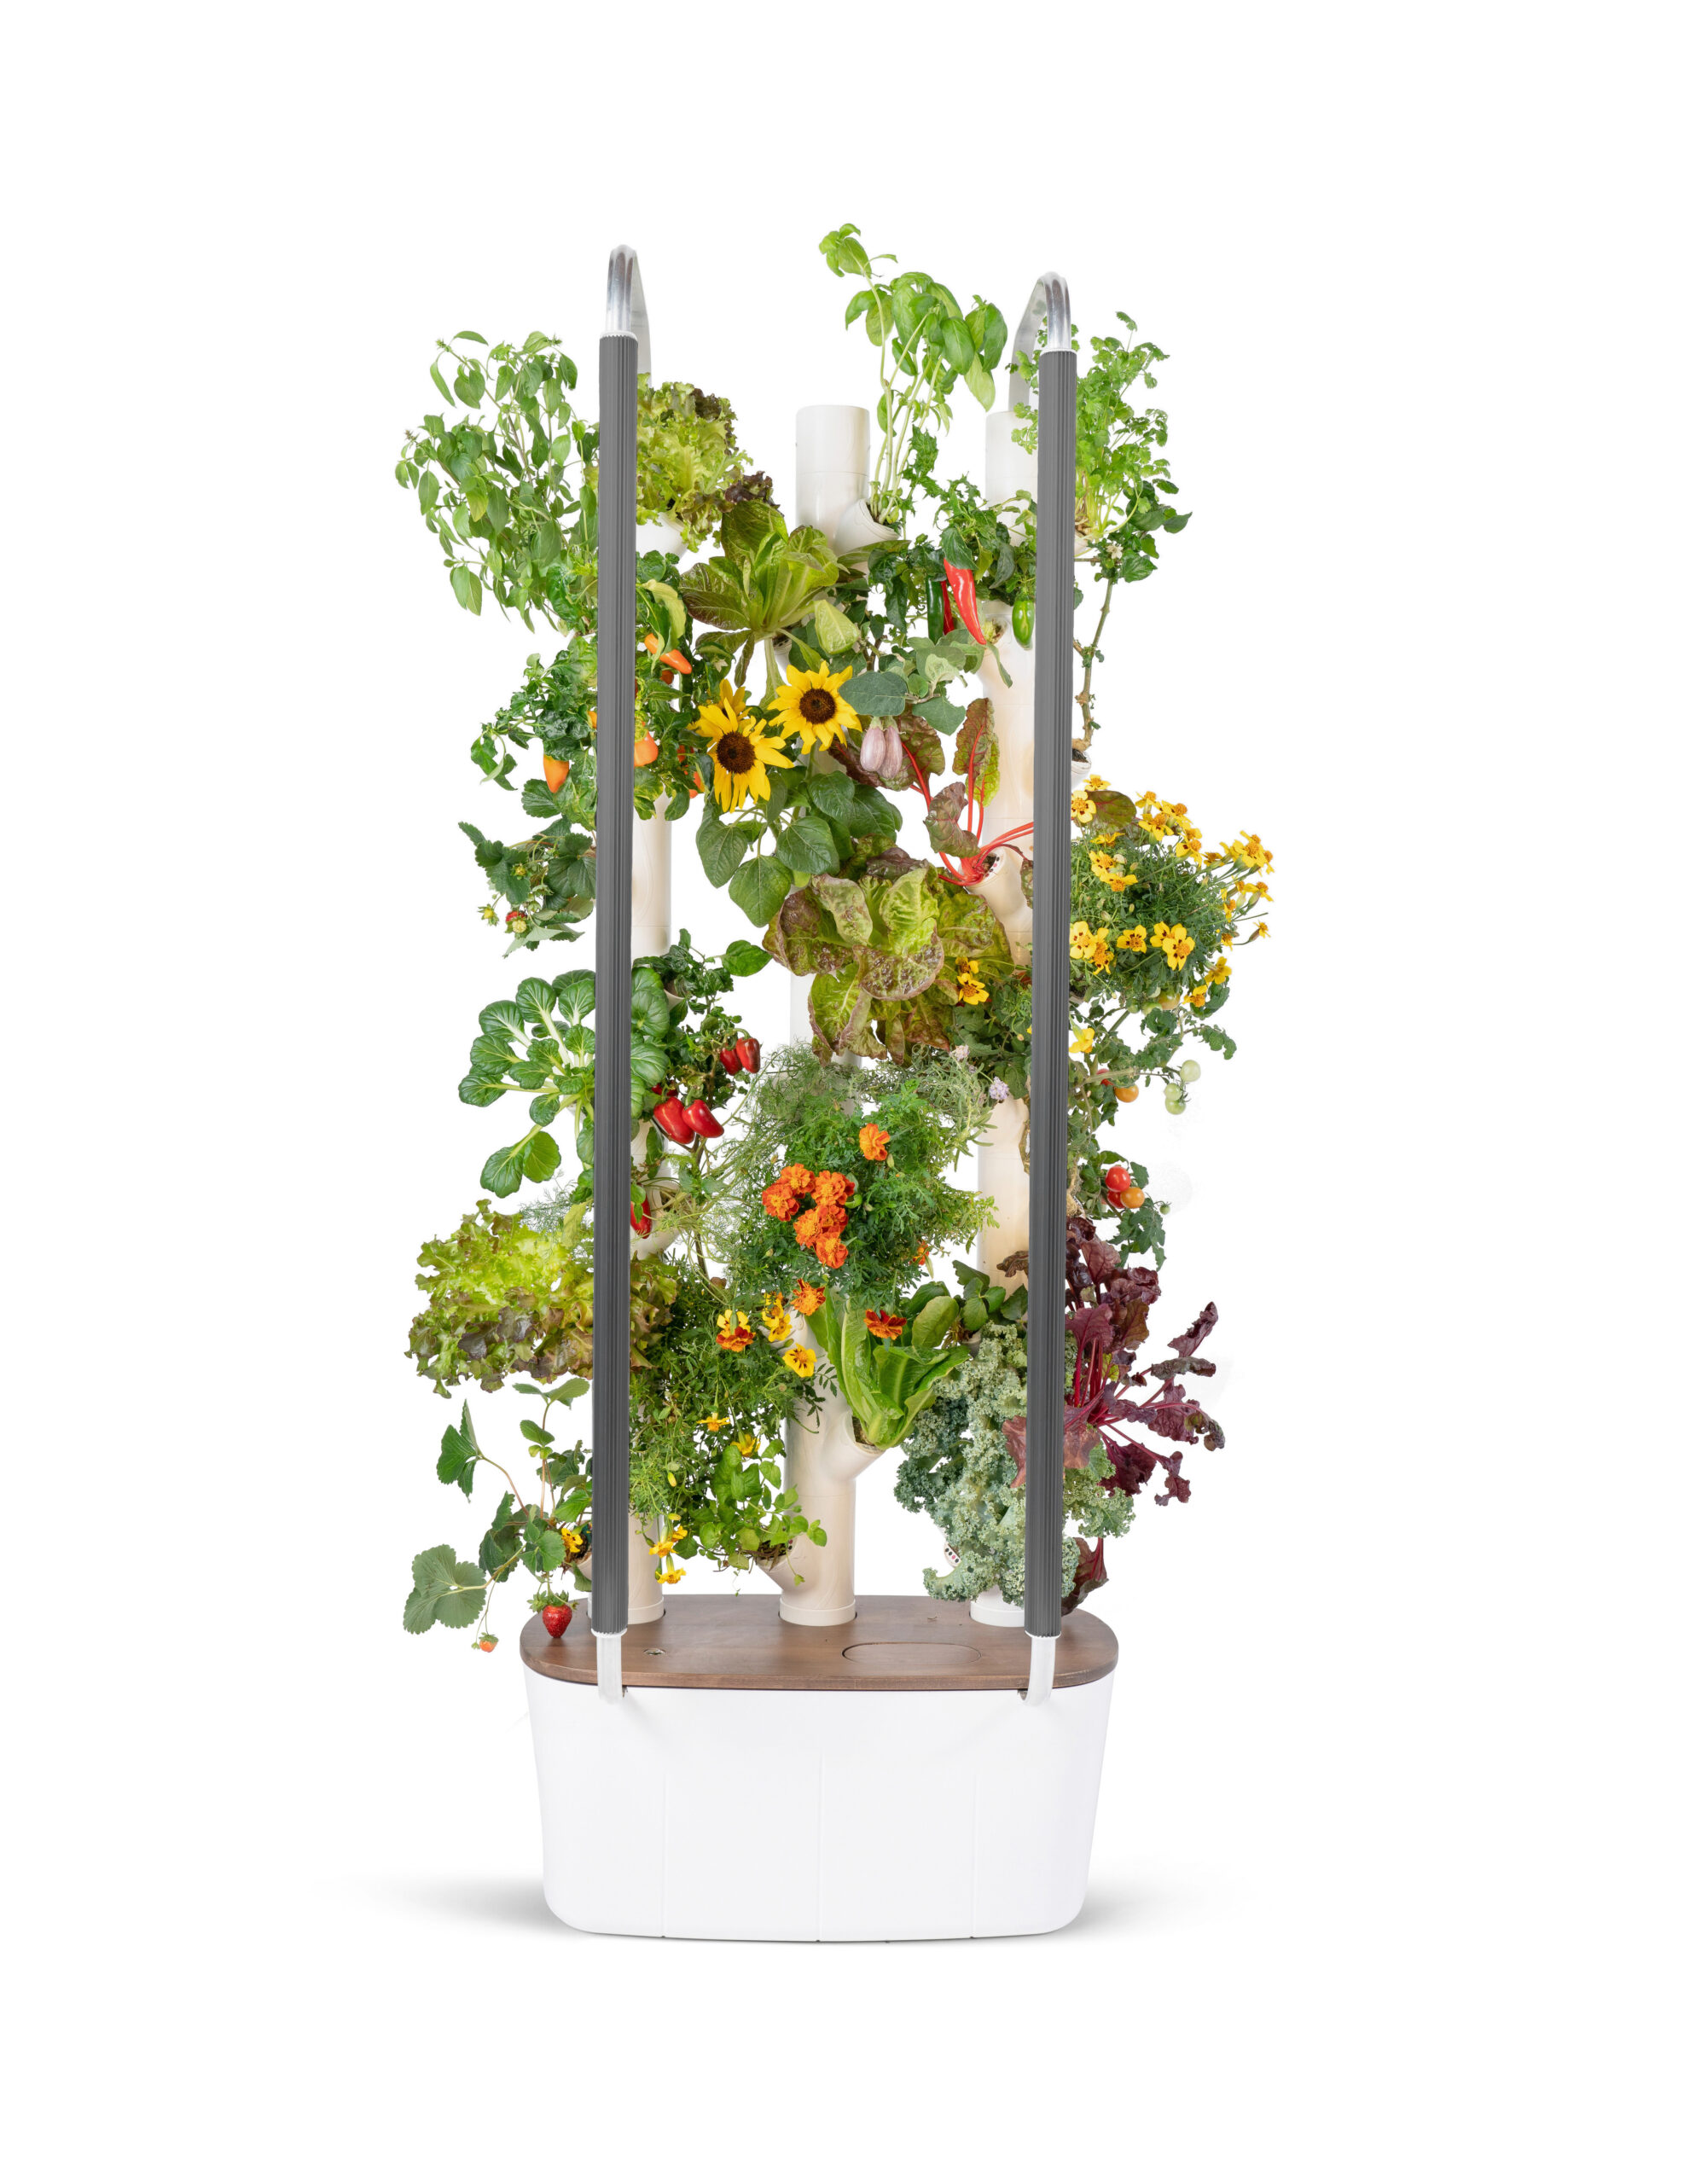 Hydroponic Tower Garden - Produce all year long ! | Gardyn